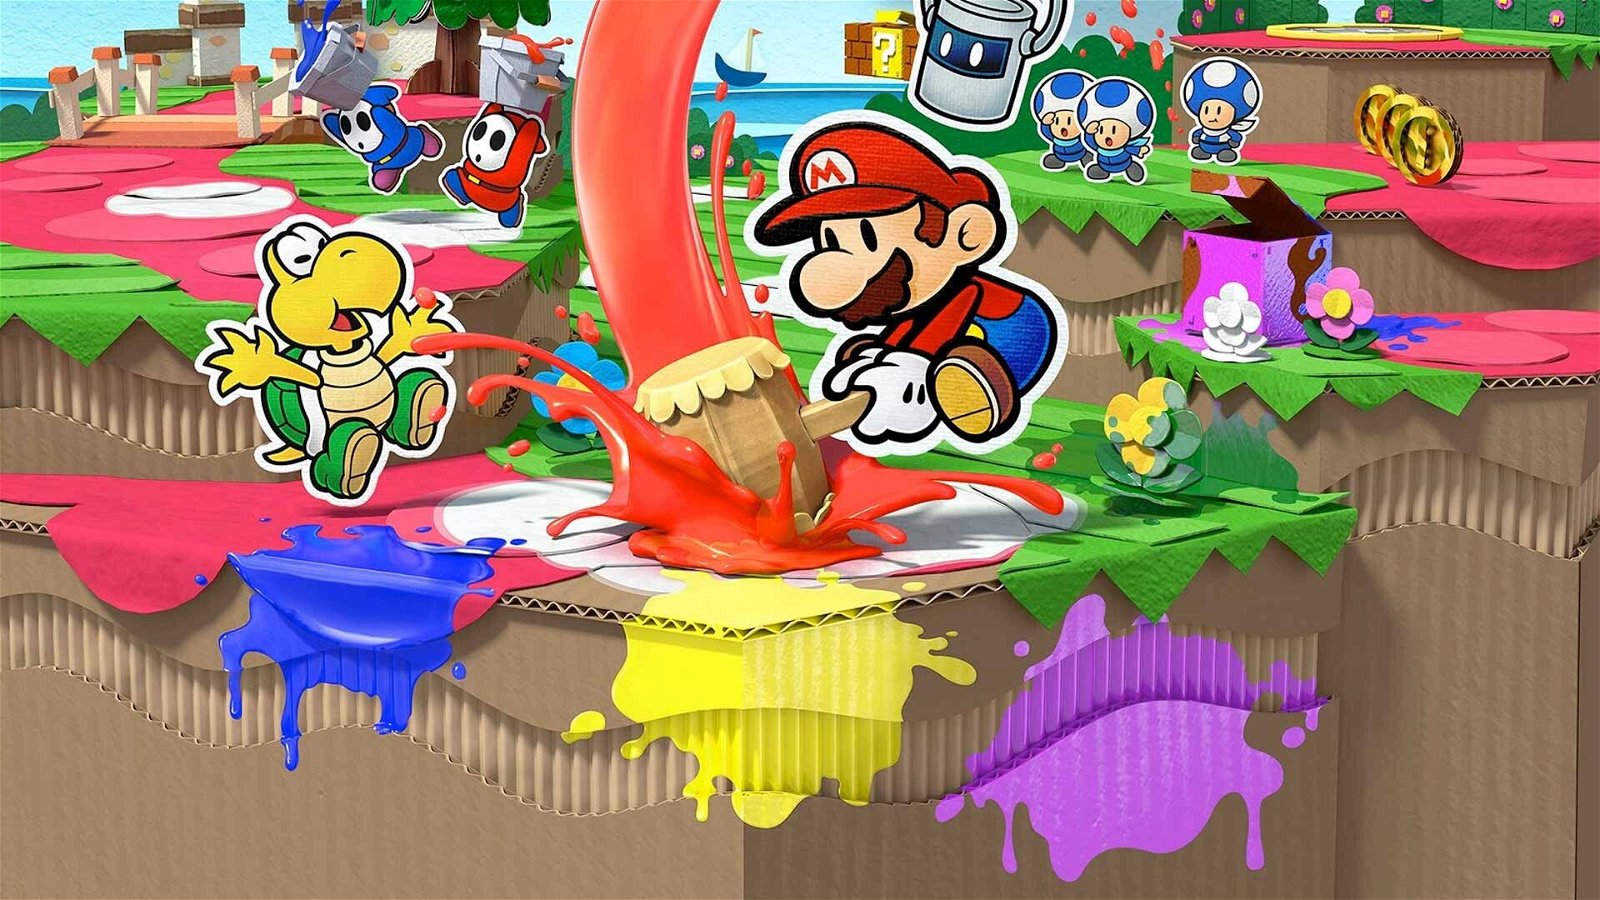 Uitdrukking stok Uitbarsten Paper Mario: Color Splash (Wii U) Review - CGMagazine